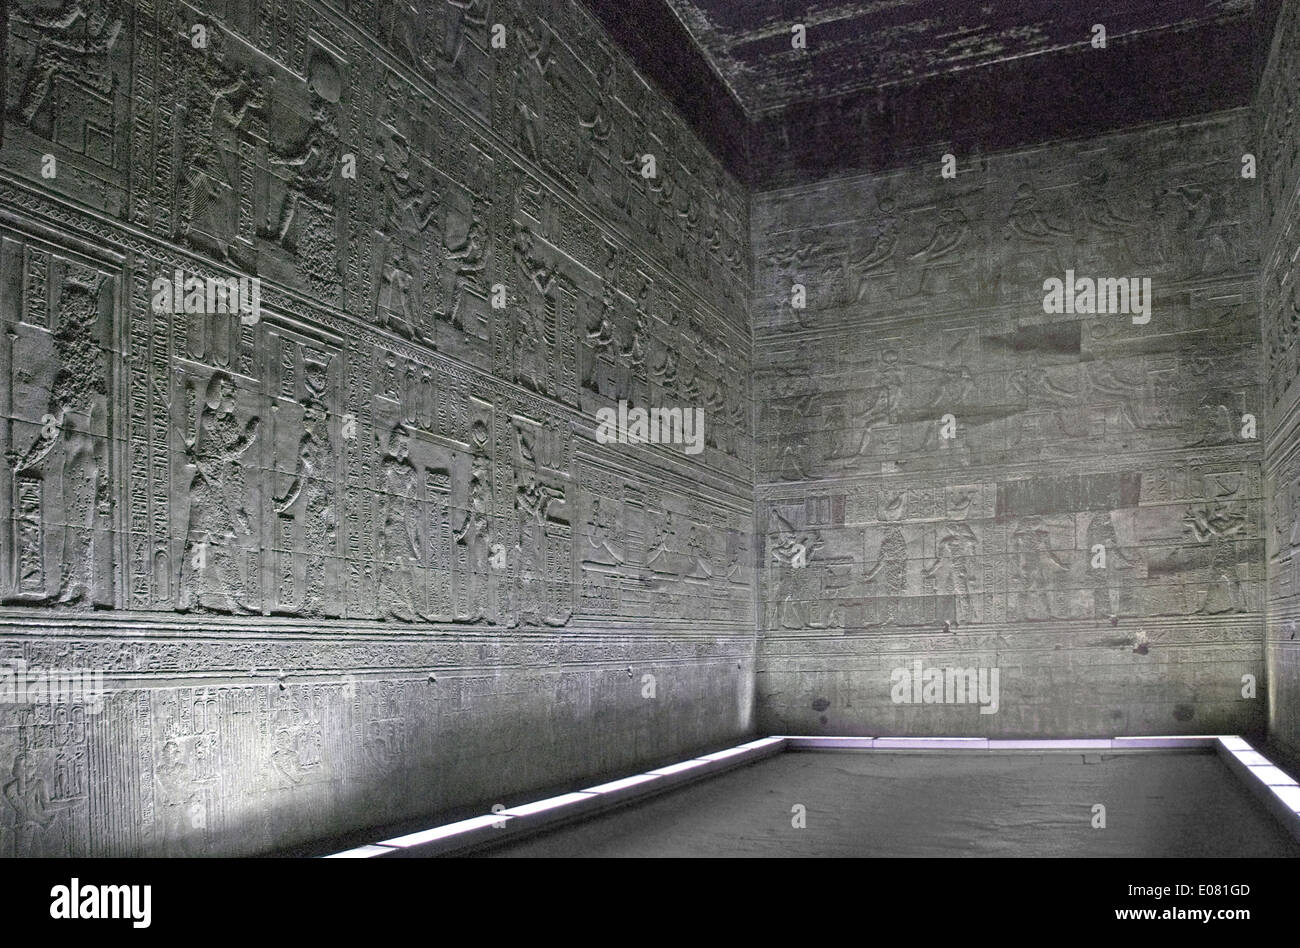 L'Egitto,Dendera,tempio tolemaico della dea Hathor.incisioni su pareti interne. Foto Stock